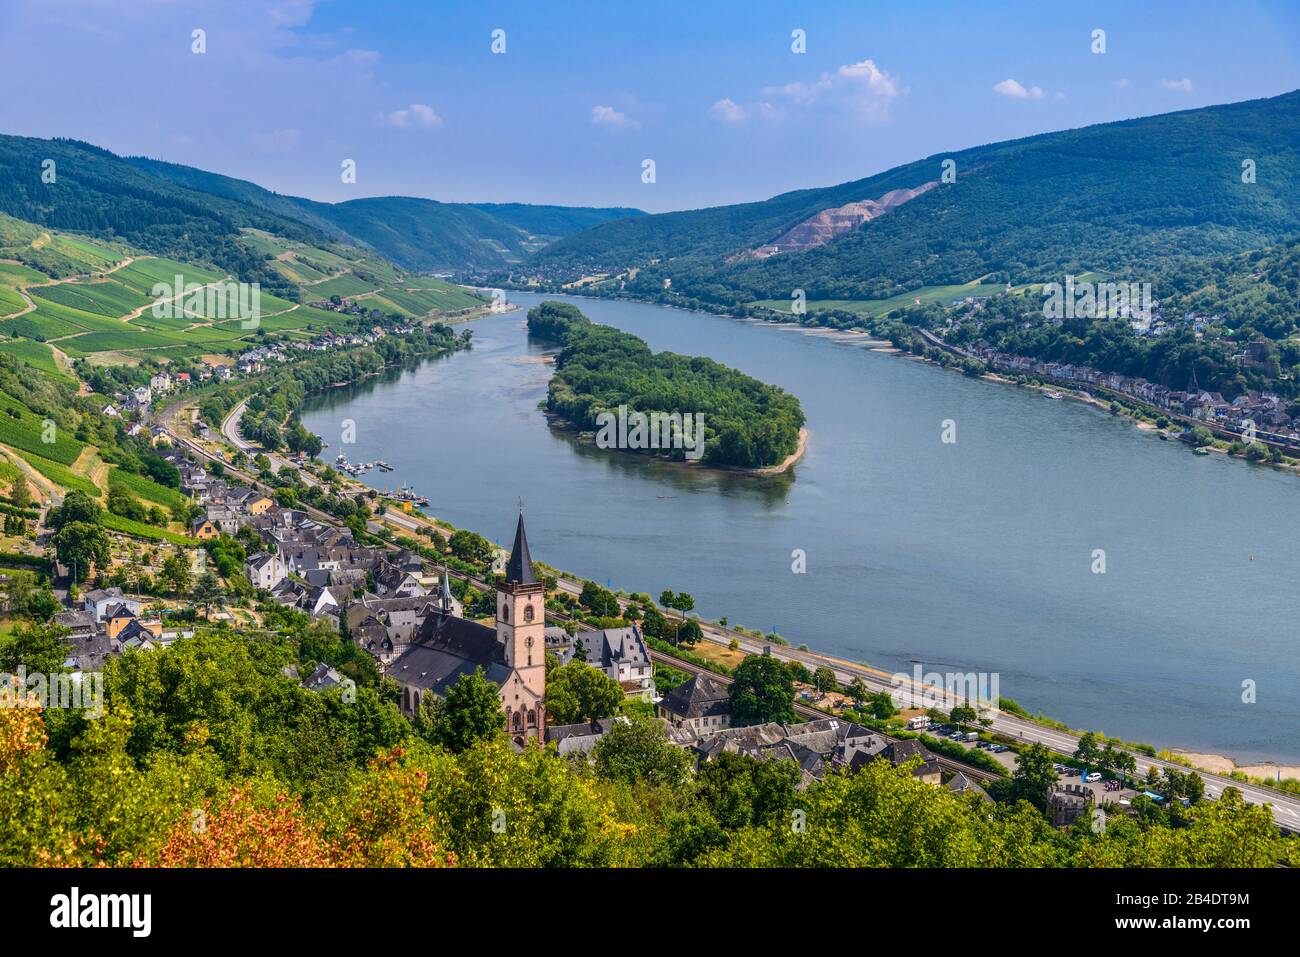 Deutschland, Hessen, Rheingau, Lorch, Ortsansicht mit Rhein, Insel 'Lorcher Werth' und Niederheimbach Stock Photo